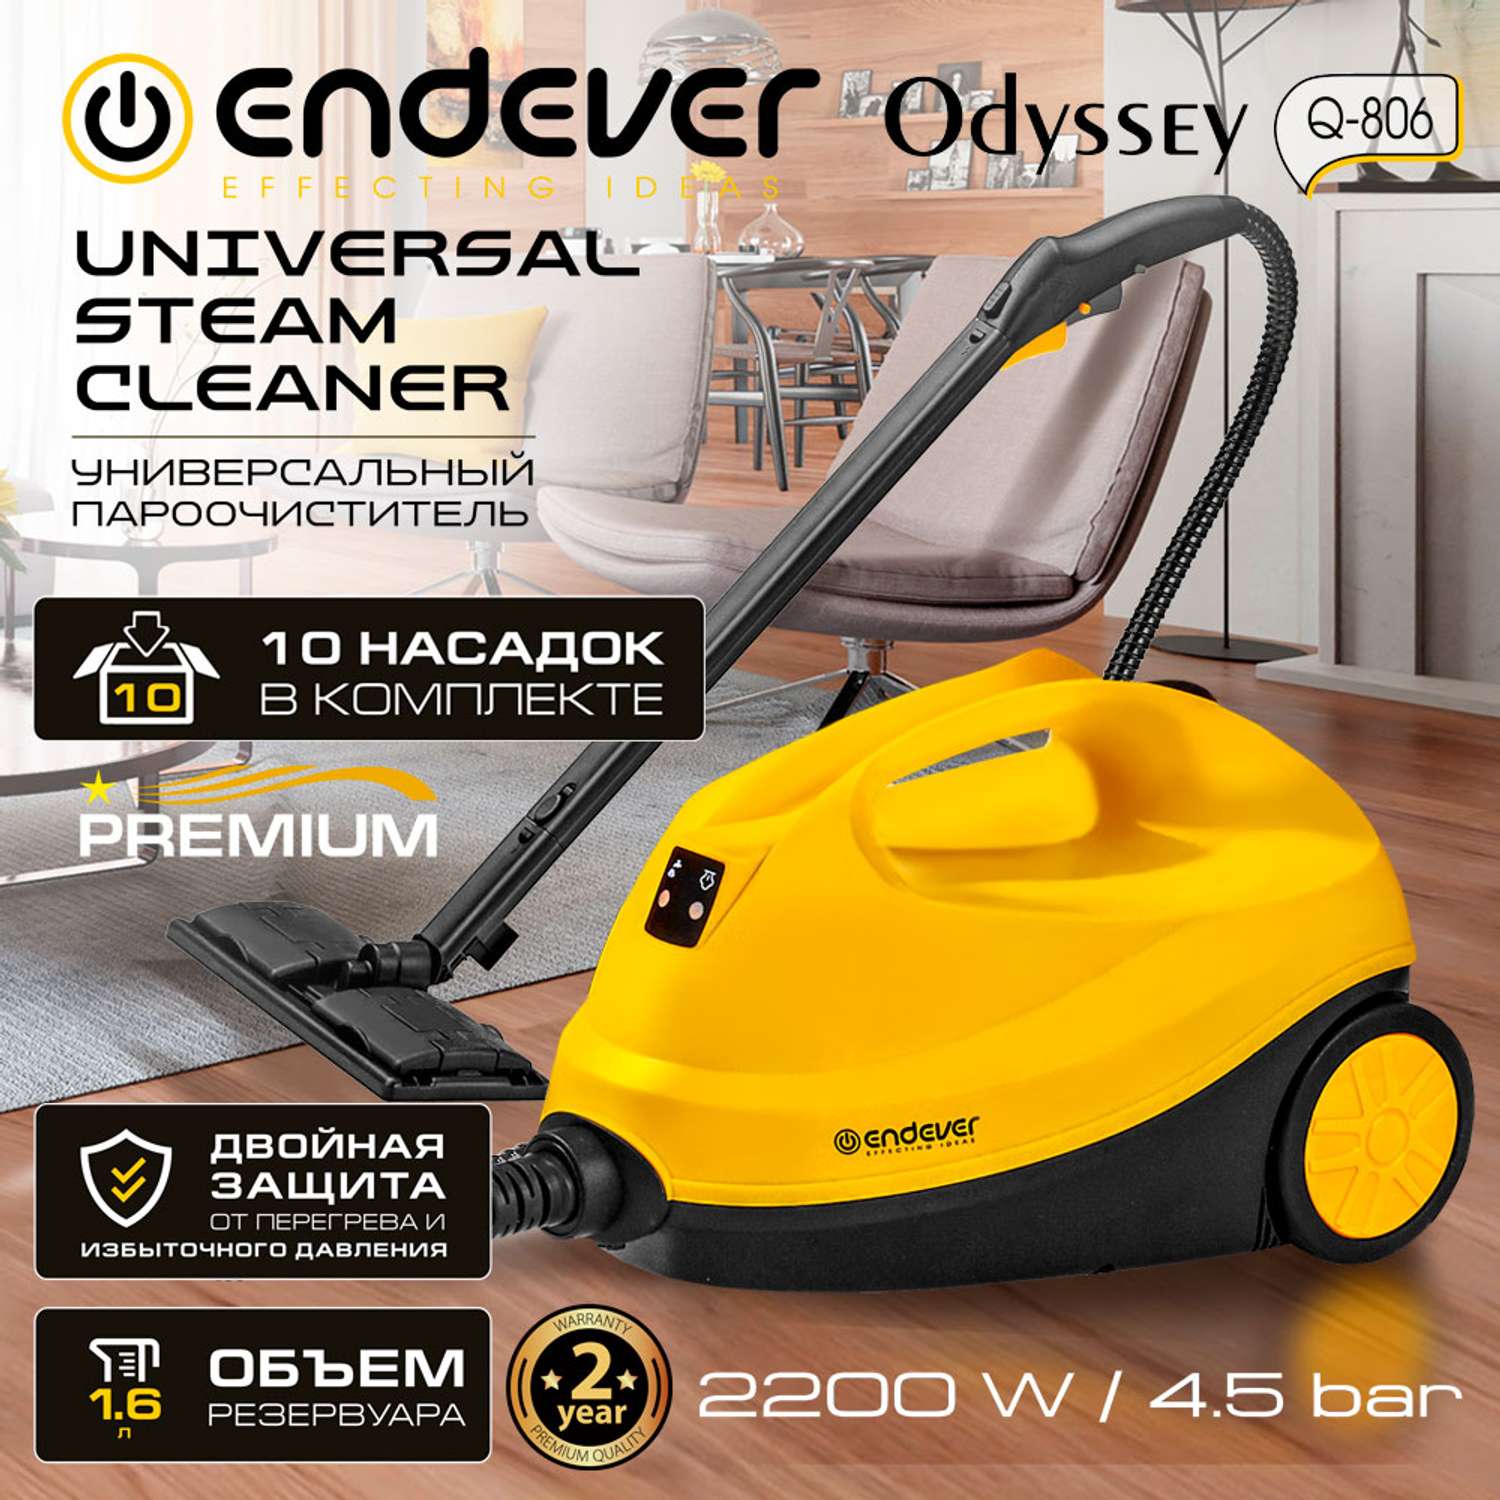 Универсальный пароочиститель ENDEVER Odyssey Q-806 - фото 2